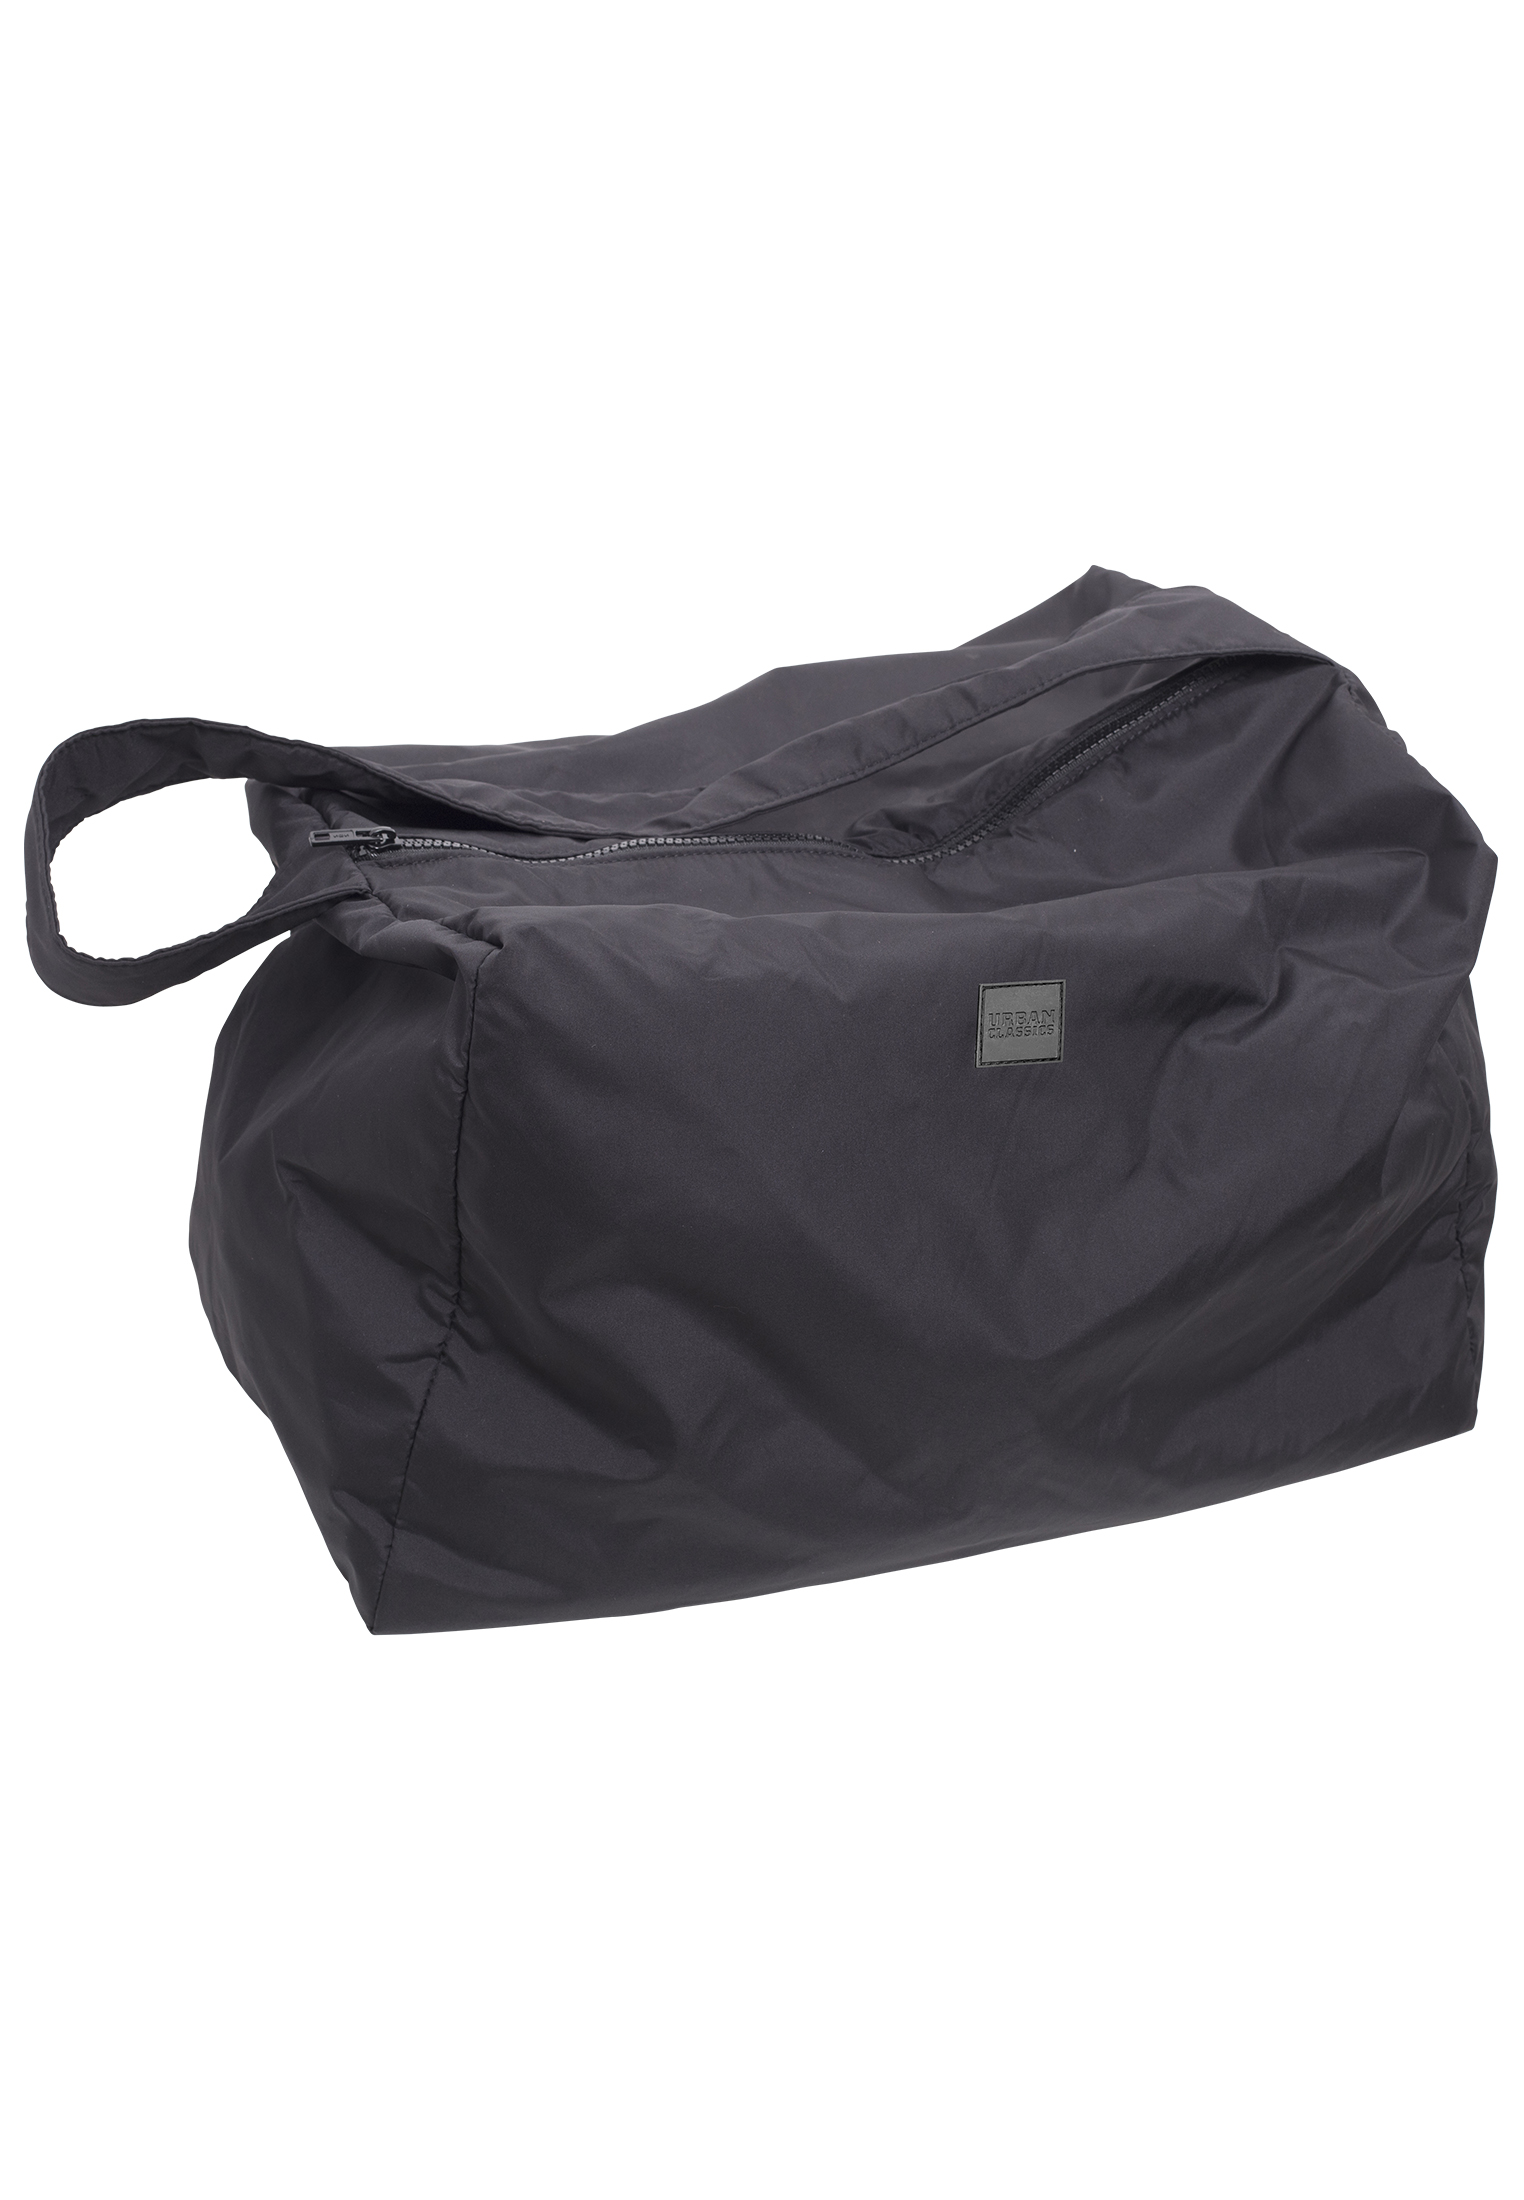 Taschen XXL Bag in Farbe black